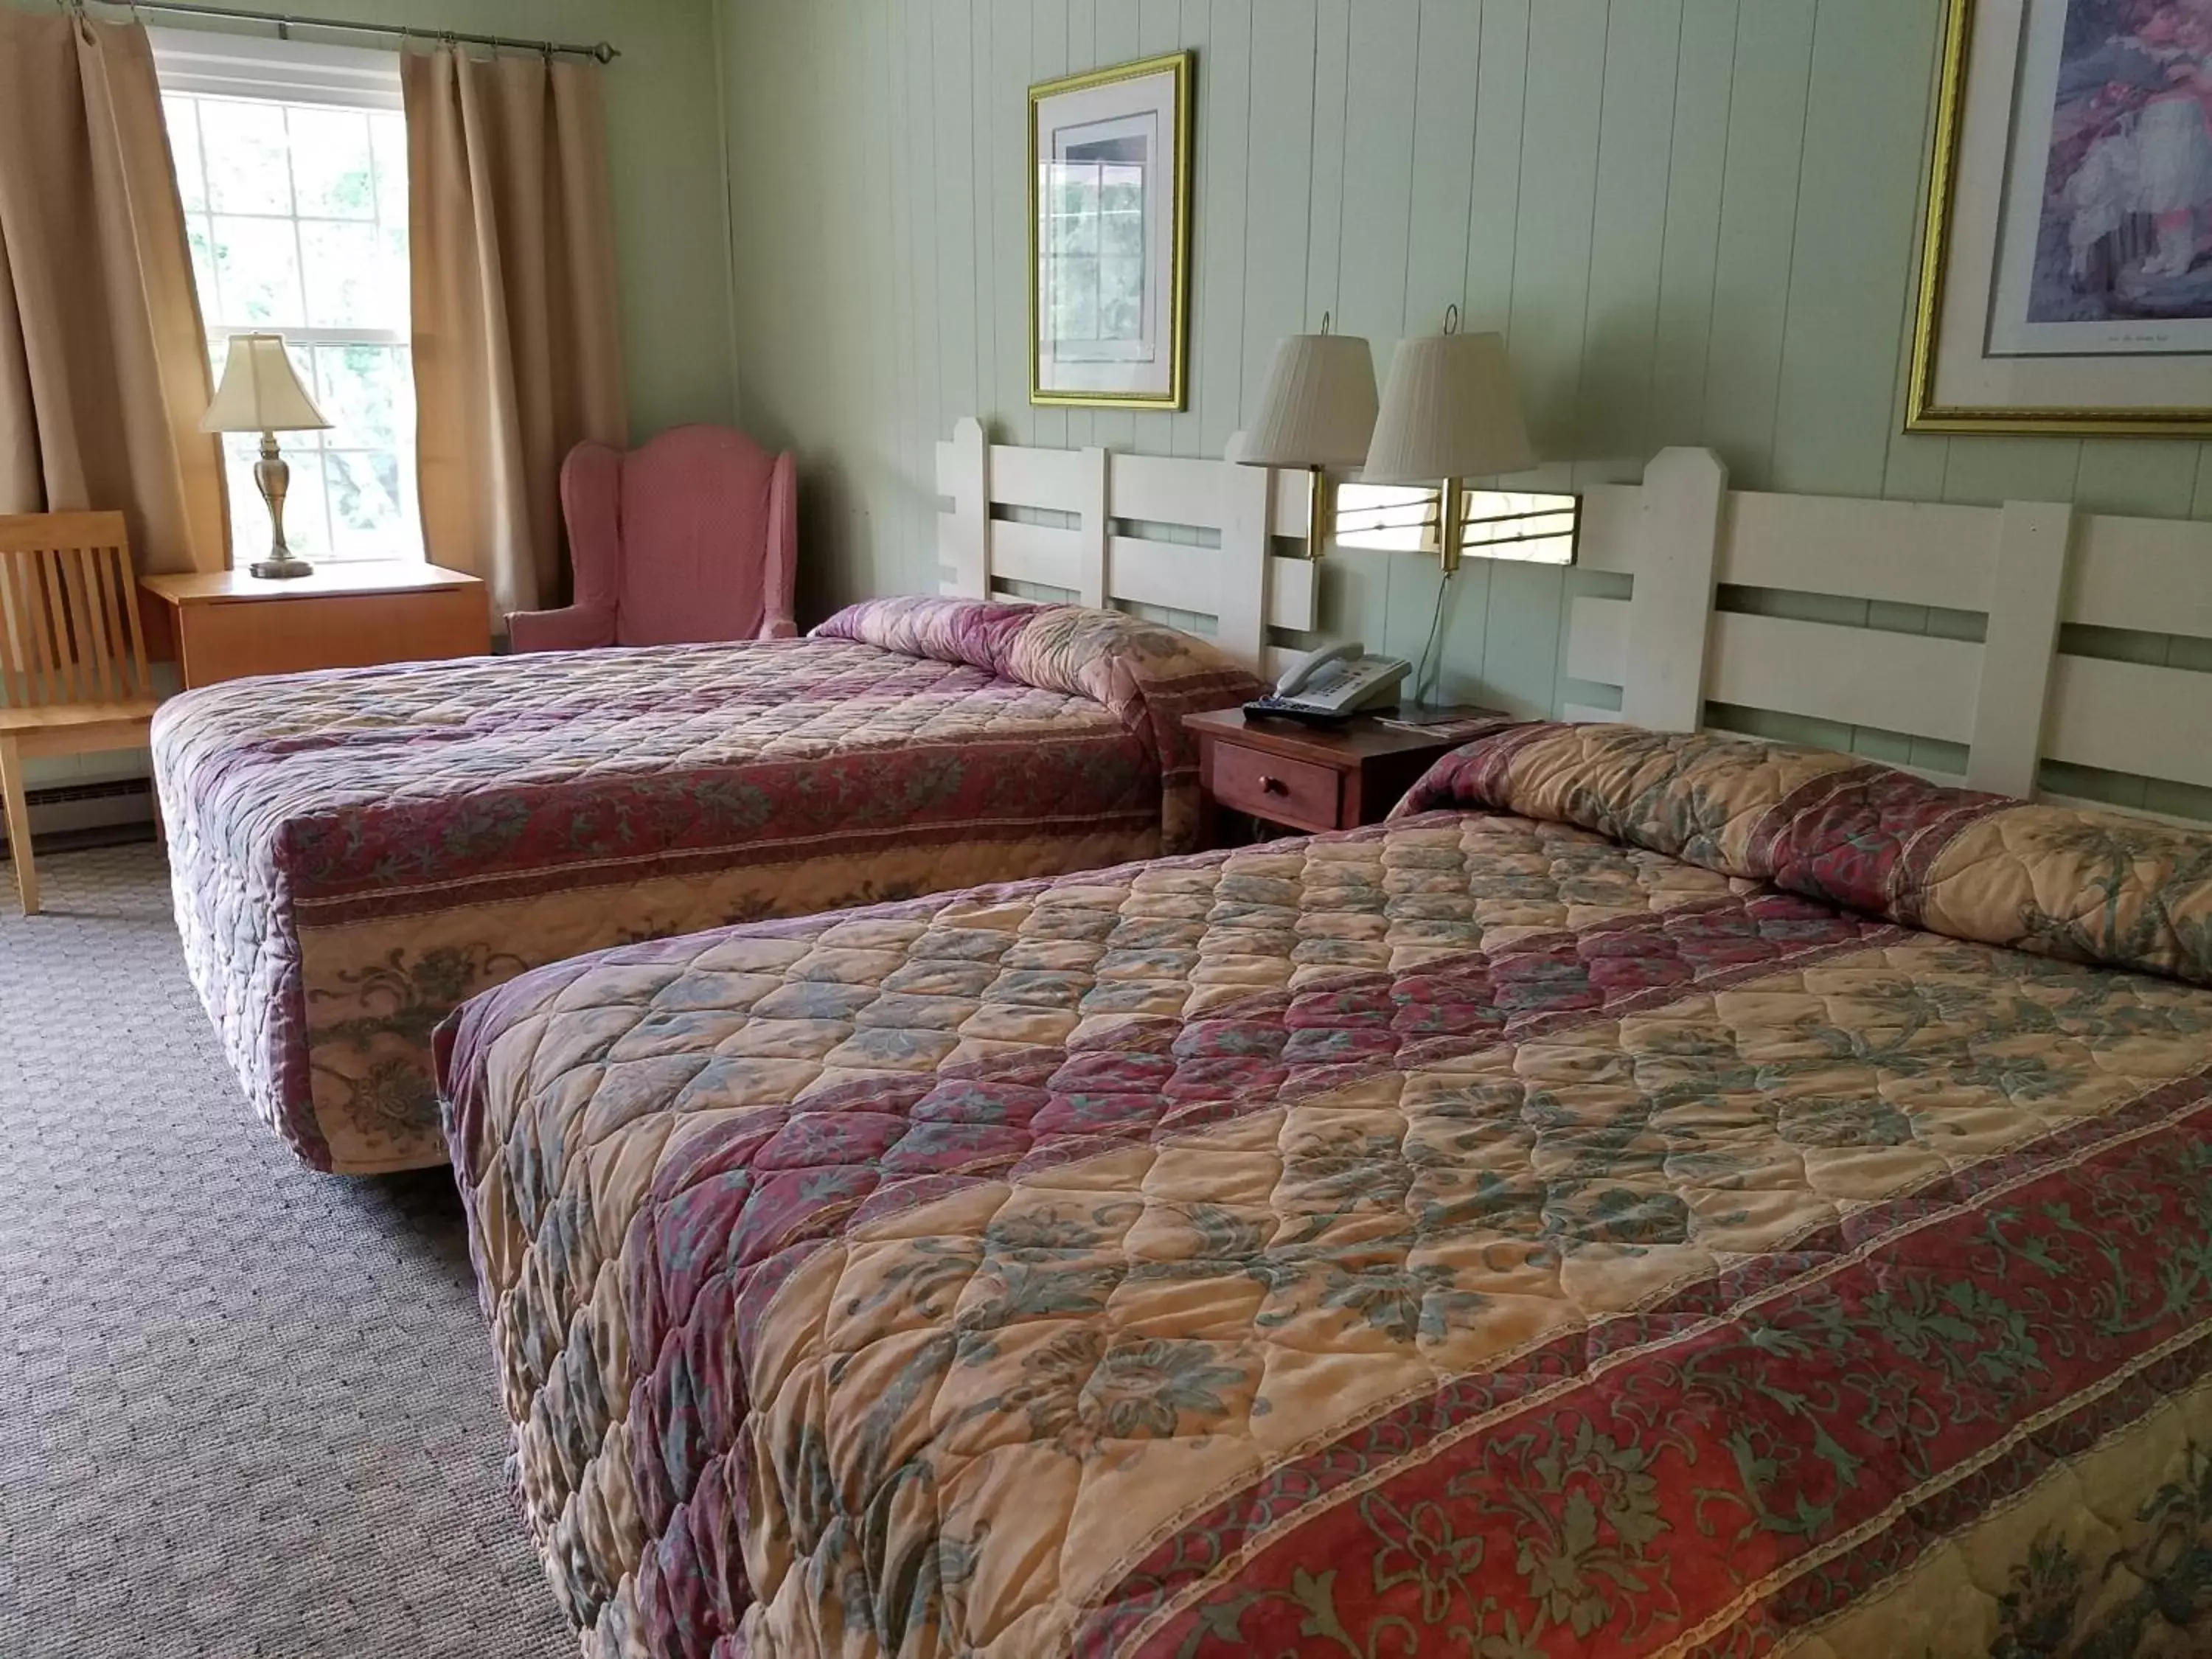 Bed, Room Photo in Roseloe Motel